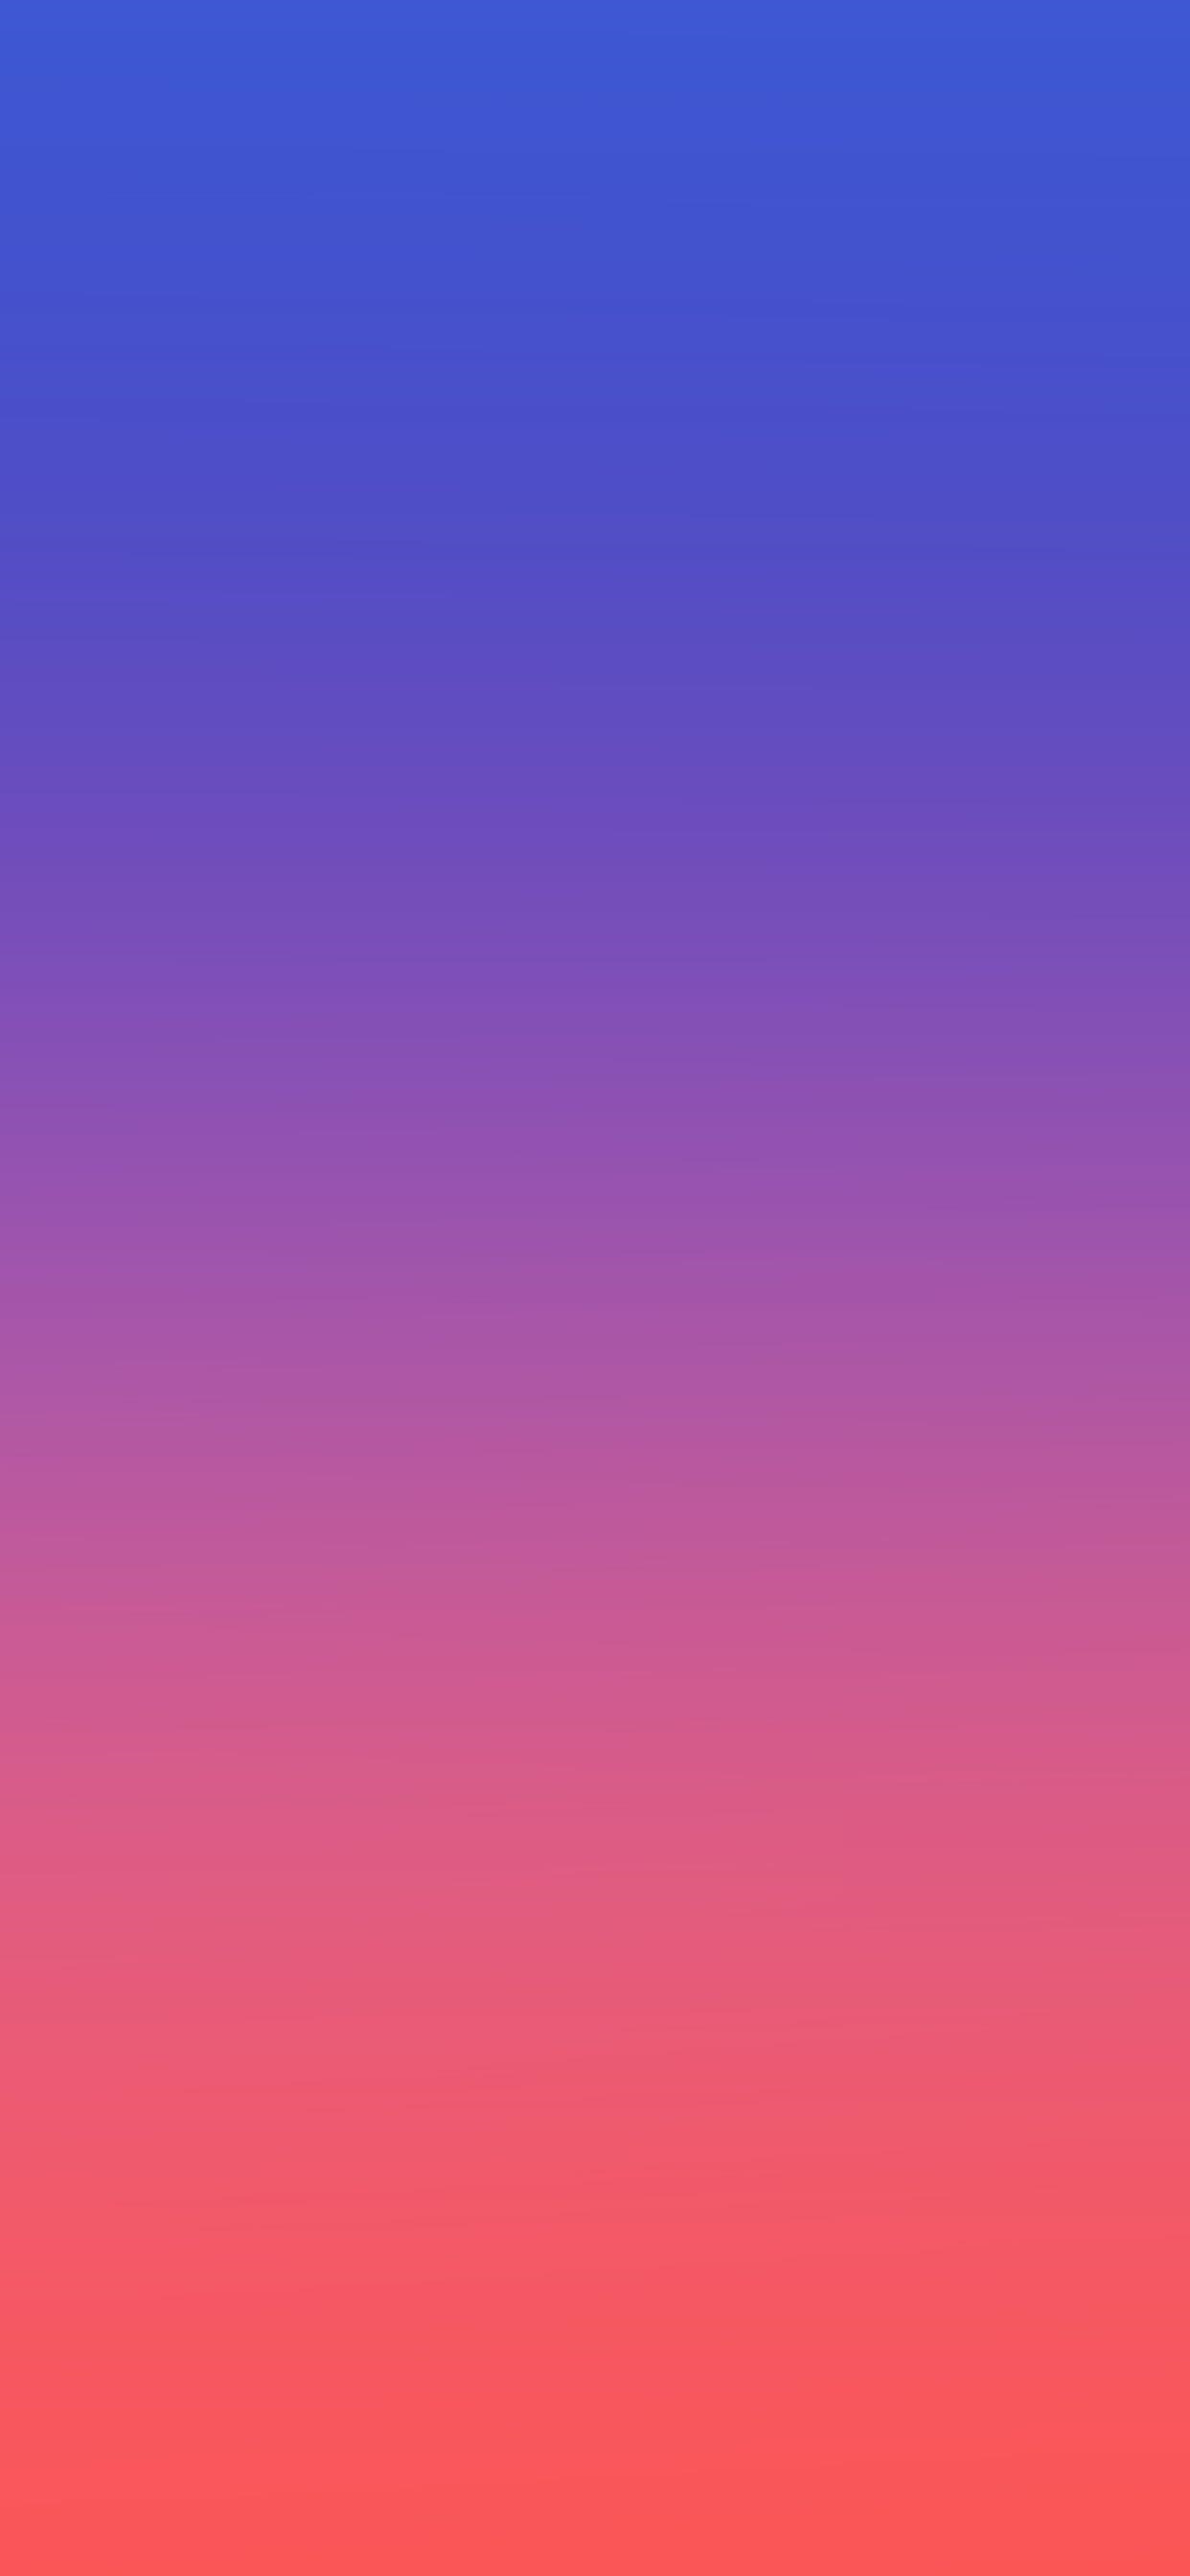 samsung wallpaper,blau,himmel,violett,rosa,lila